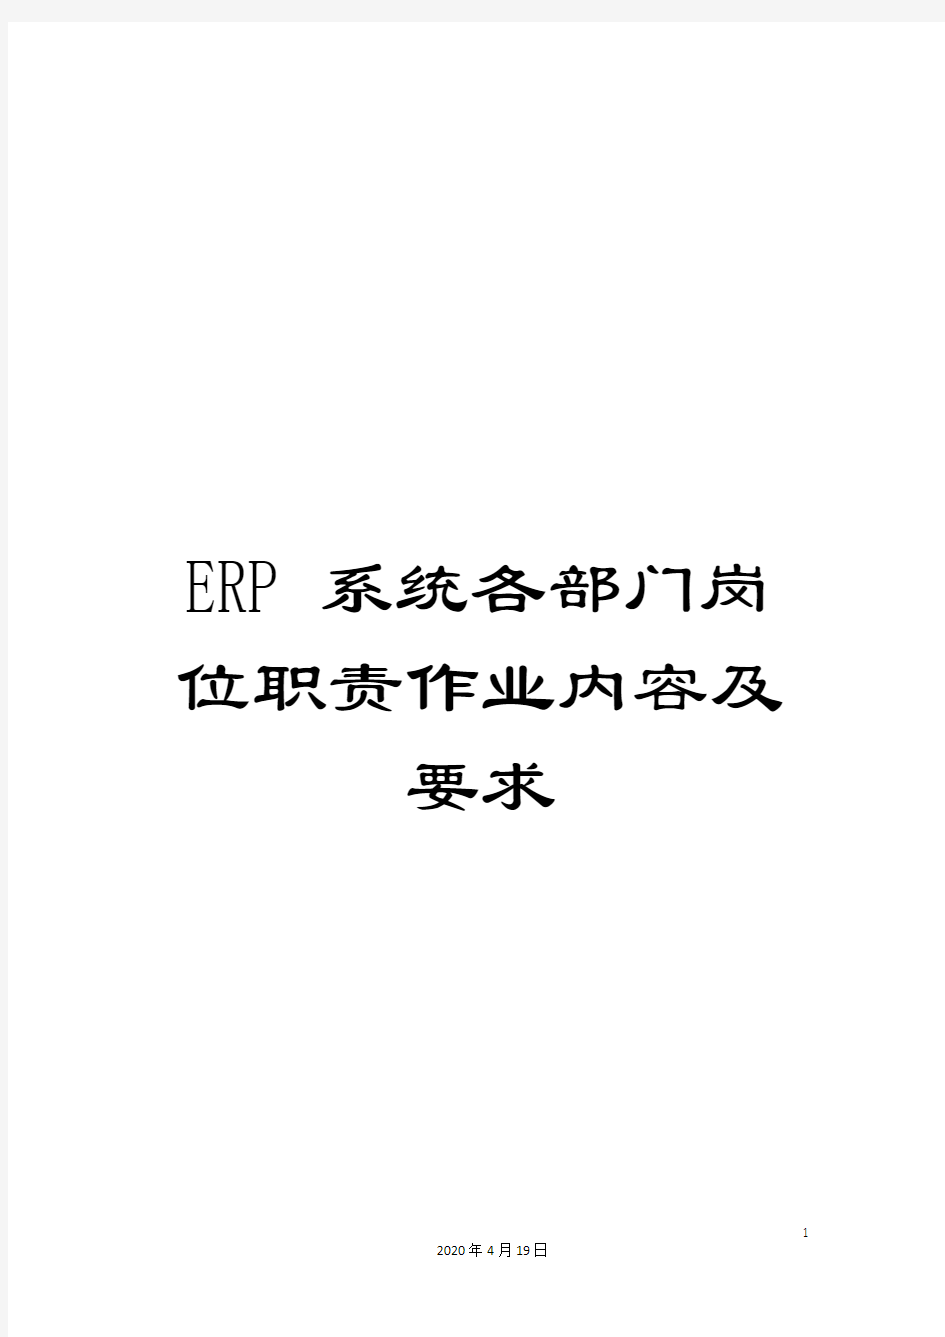 ERP系统各部门岗位职责作业内容及要求